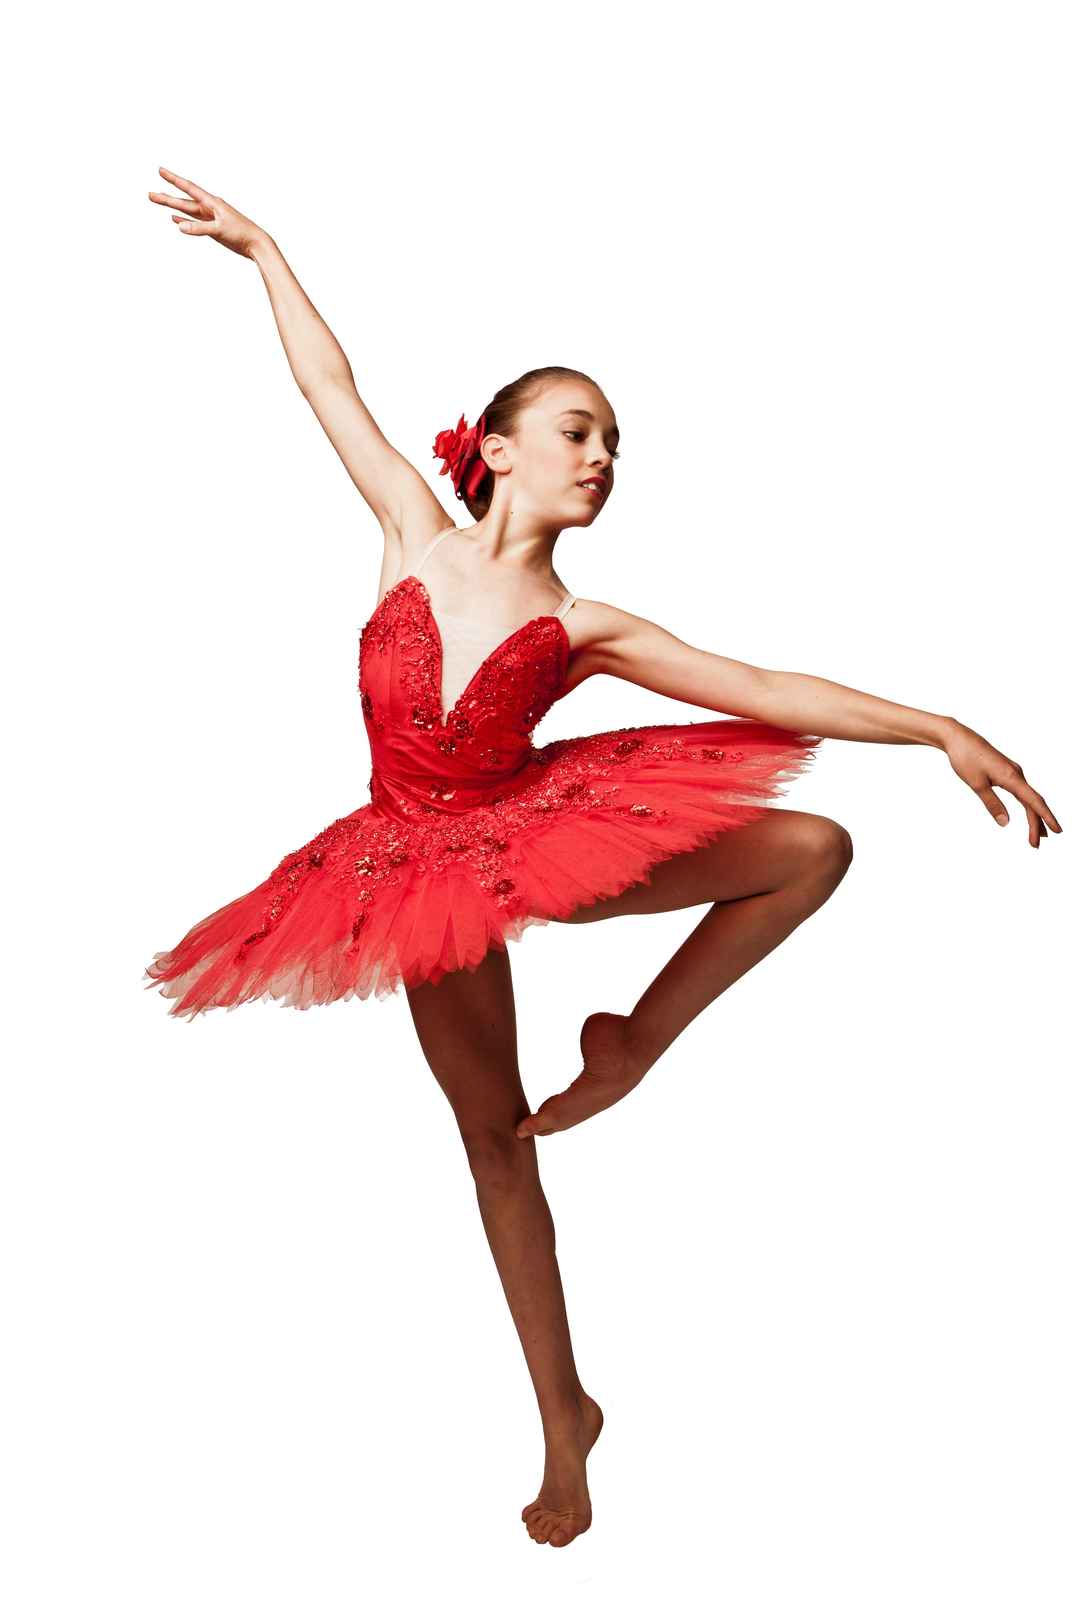 美女红色裙子芭蕾舞图片